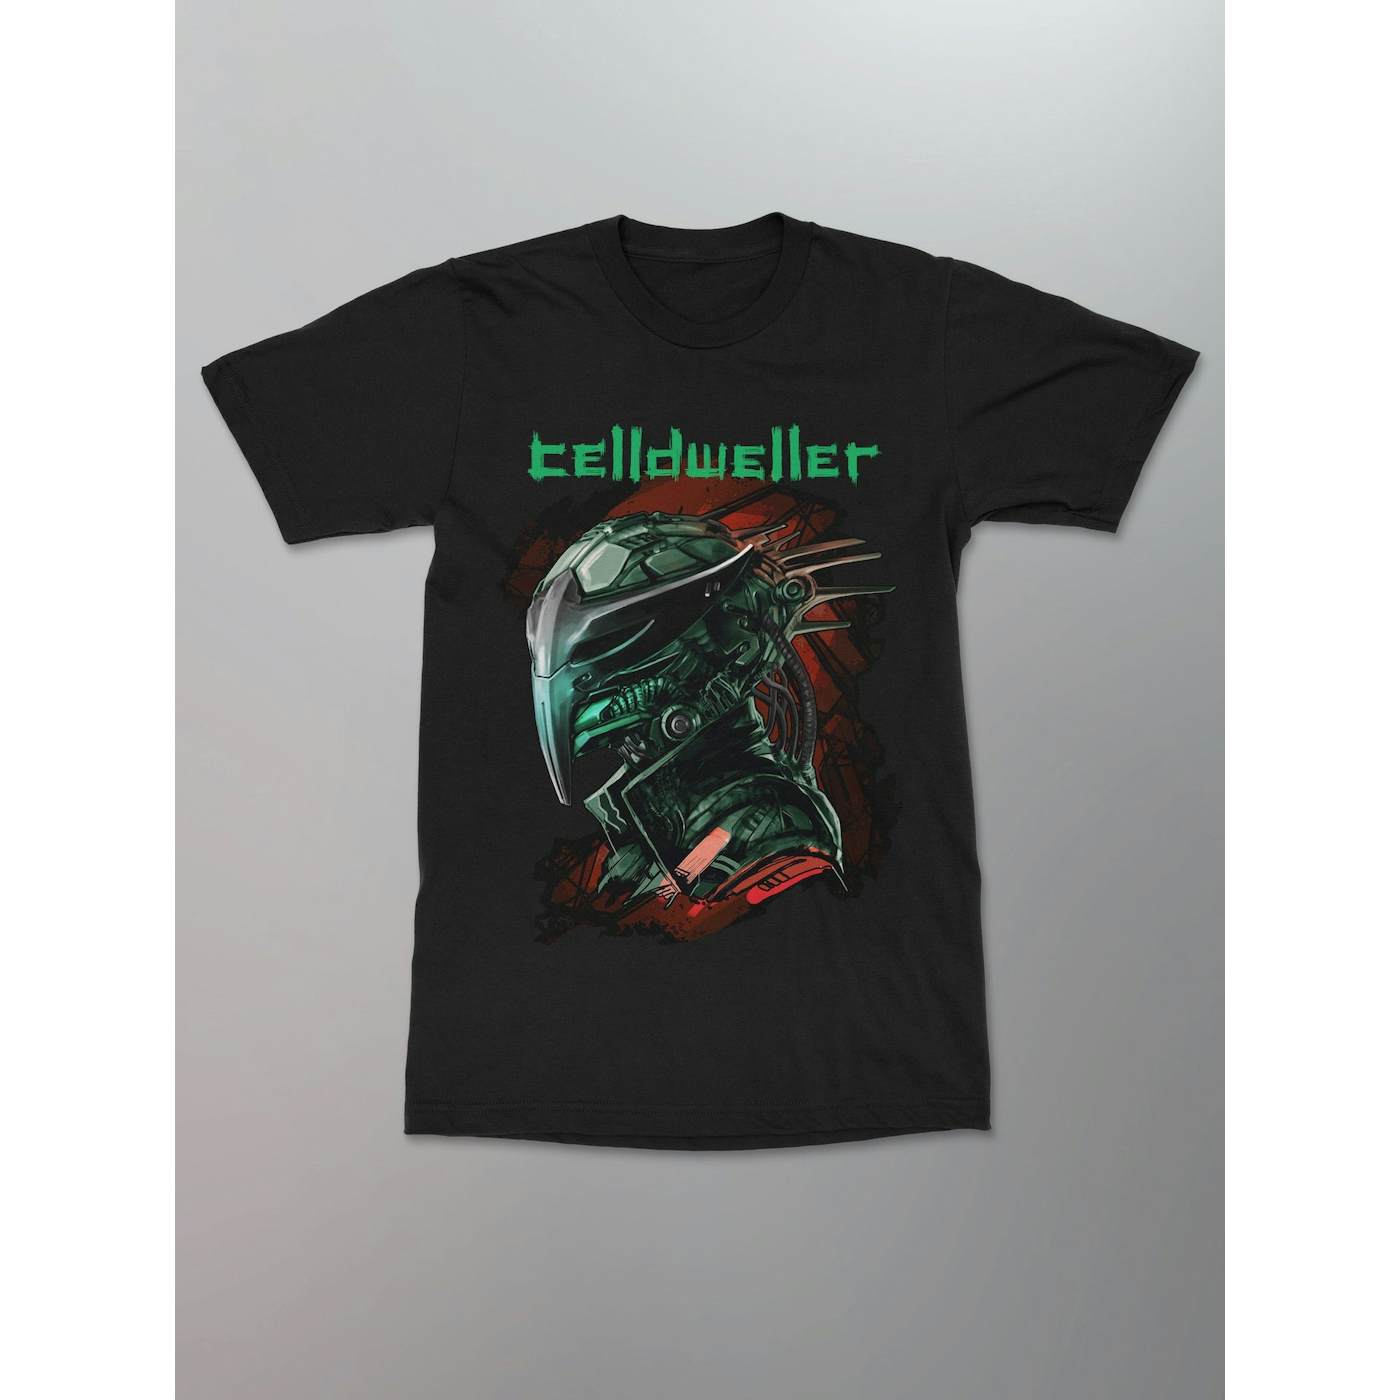 Celldweller - Dreamcatcher Shirt